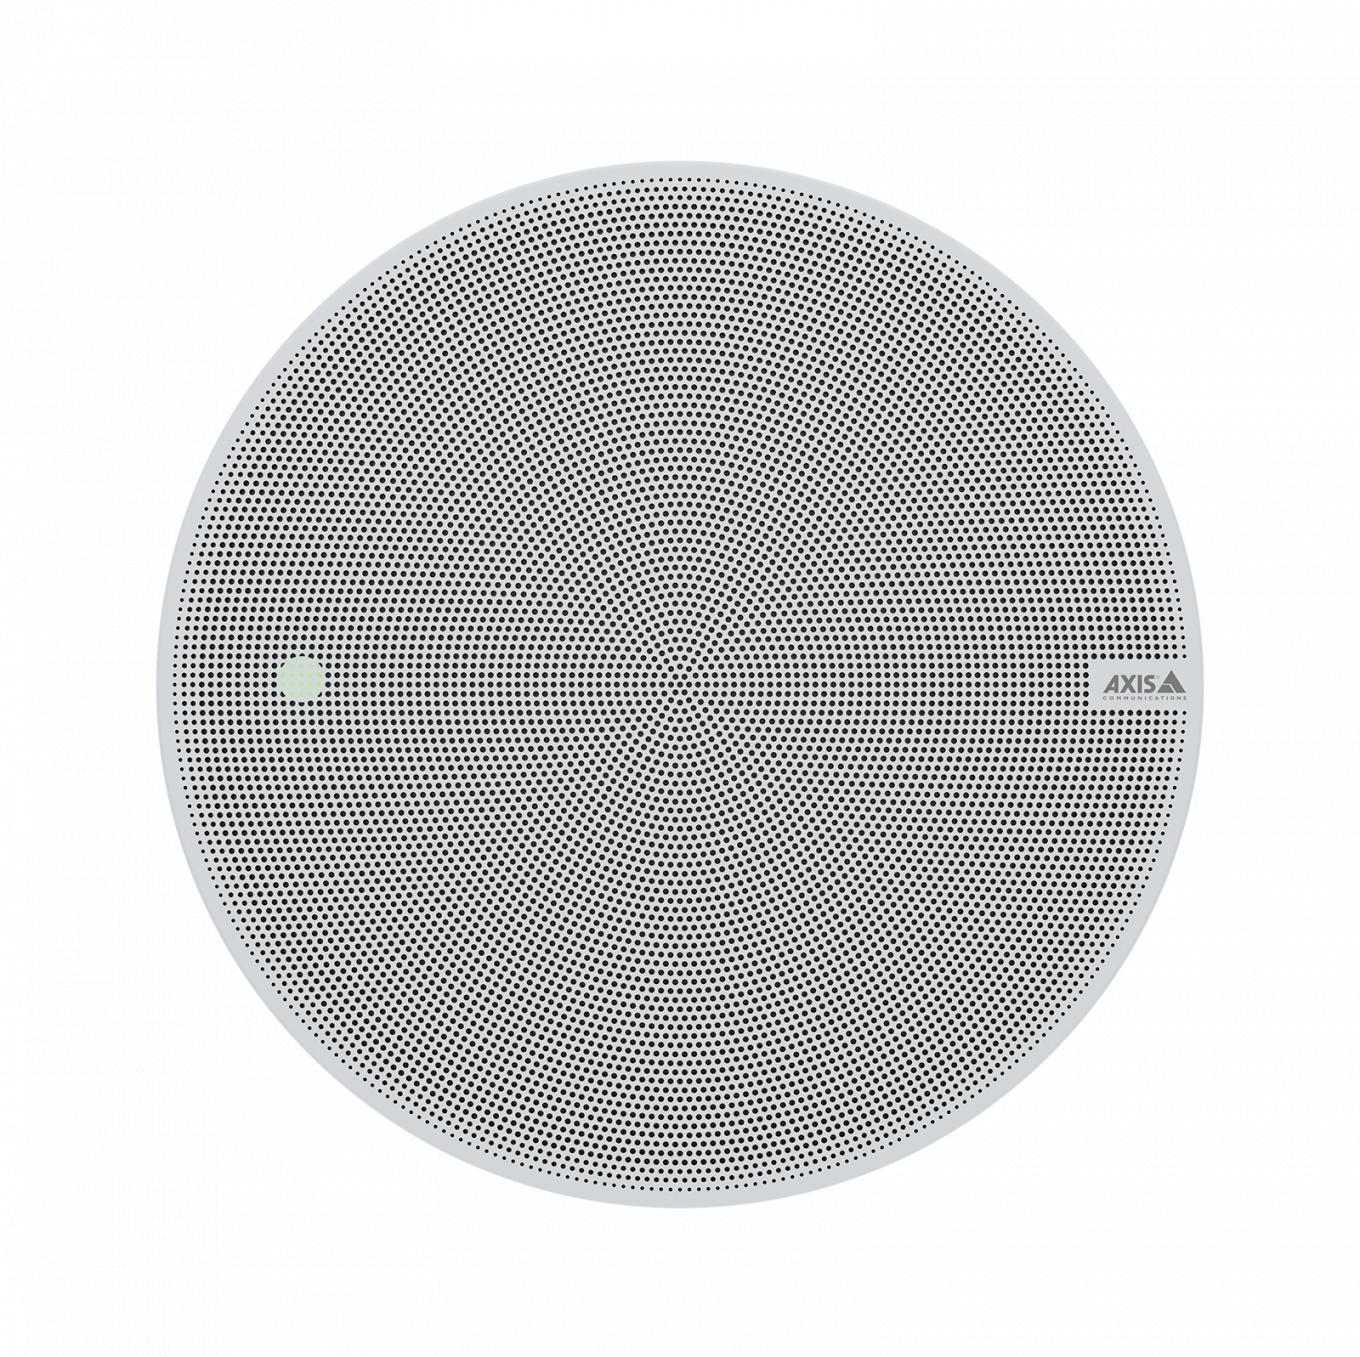 AXIS C1211-E Network Ceiling Speaker, grauer Netzwerk-Lautsprecher, von vorne gesehen